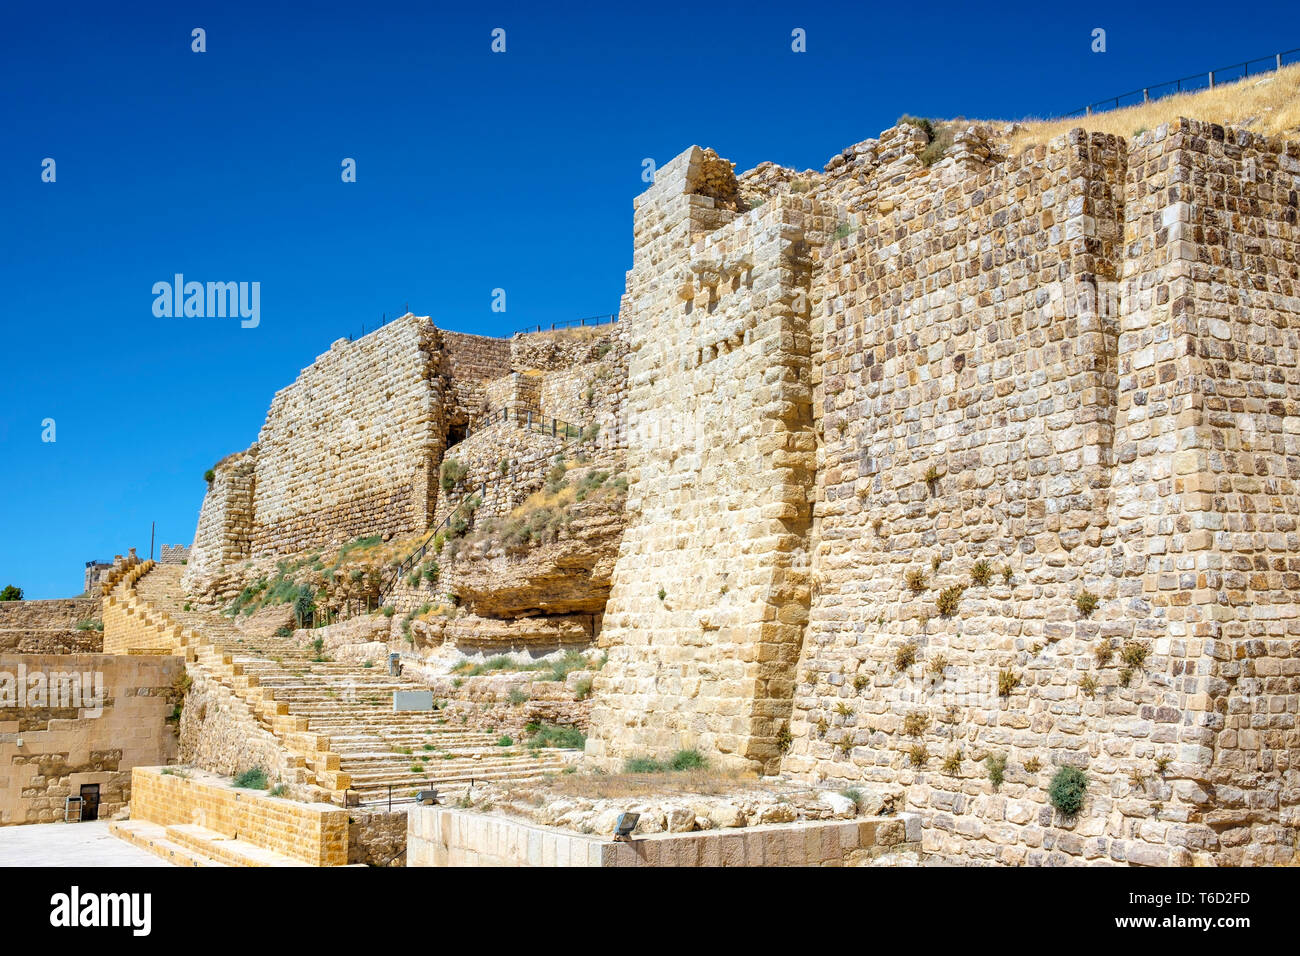 Giordania, Karak Governatorato, Al-Karak. Kerak castello del XII secolo il castello dei Crociati, uno dei più grandi castelli dei crociati nel Levante. Foto Stock